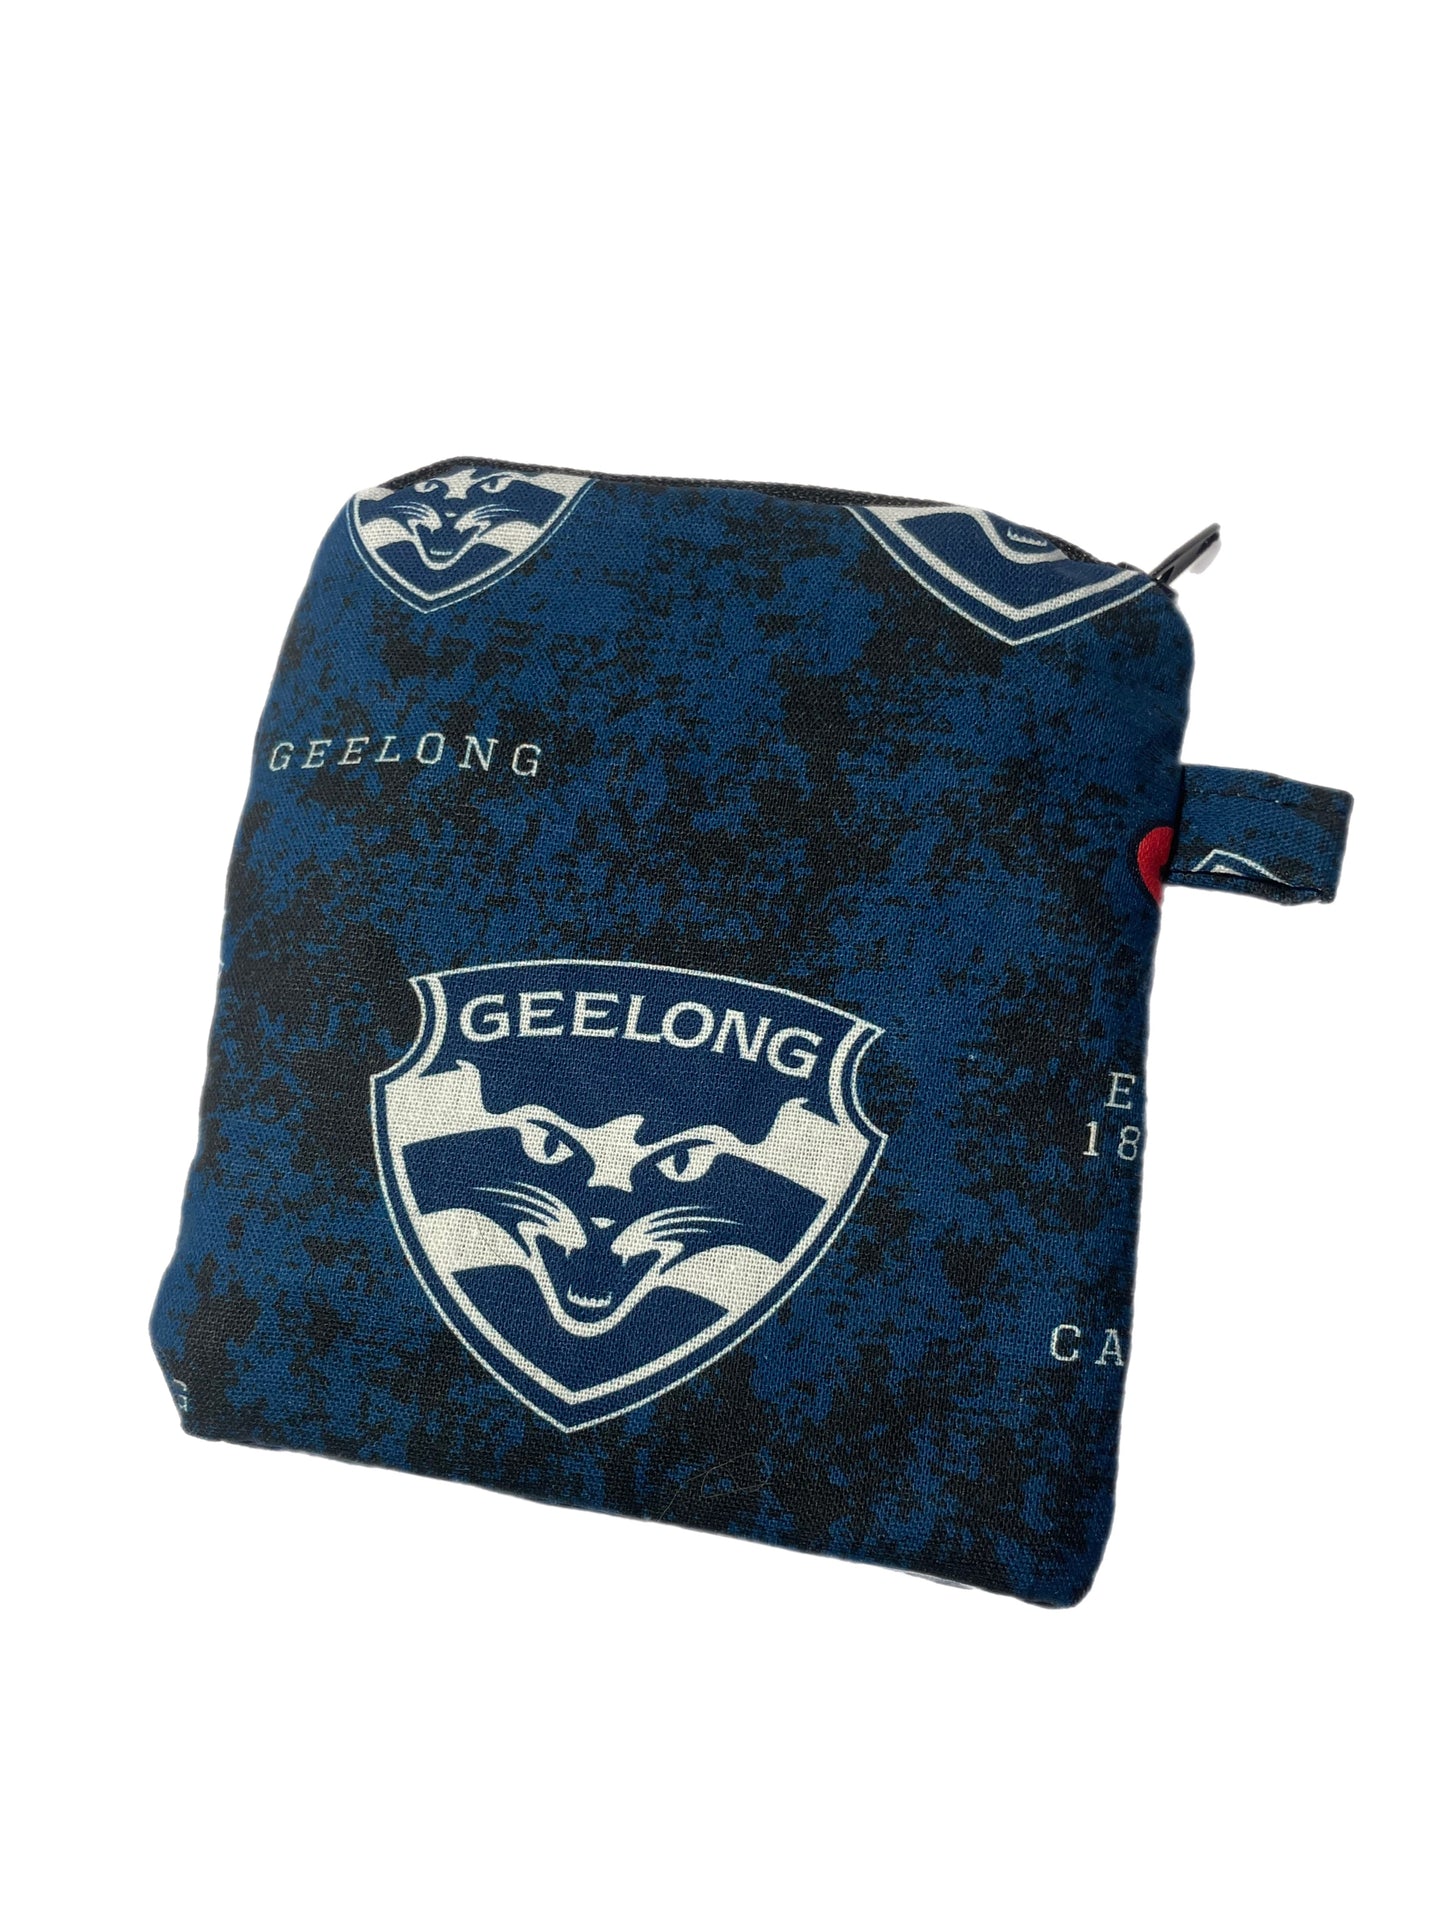 AFL inspired Go bags, poo bag holder, coin bag no